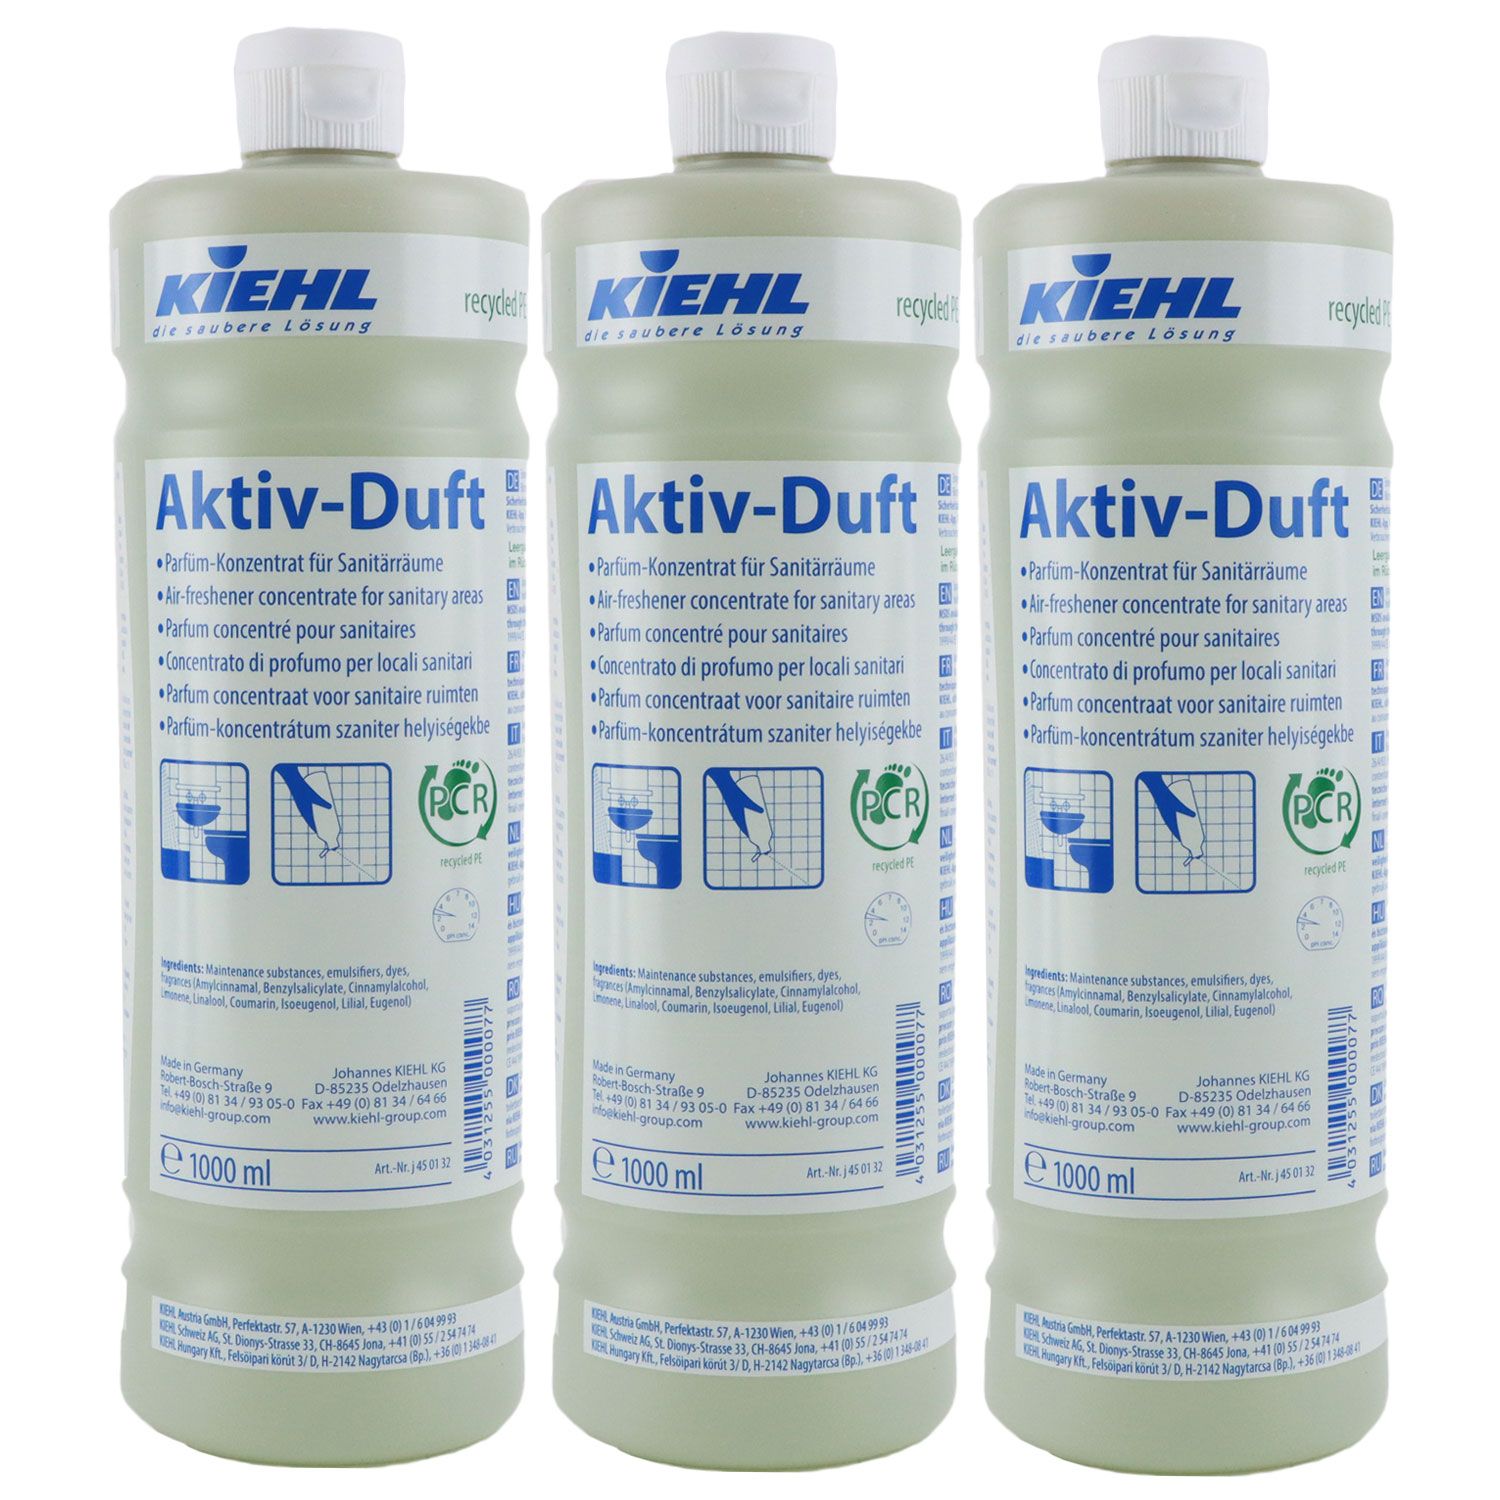 Kiehl Aktiv-Duft 3 x 1 Liter Parfüm-Konzentrat für Sanitärräume Raumduft  Set NEU bei Riemax